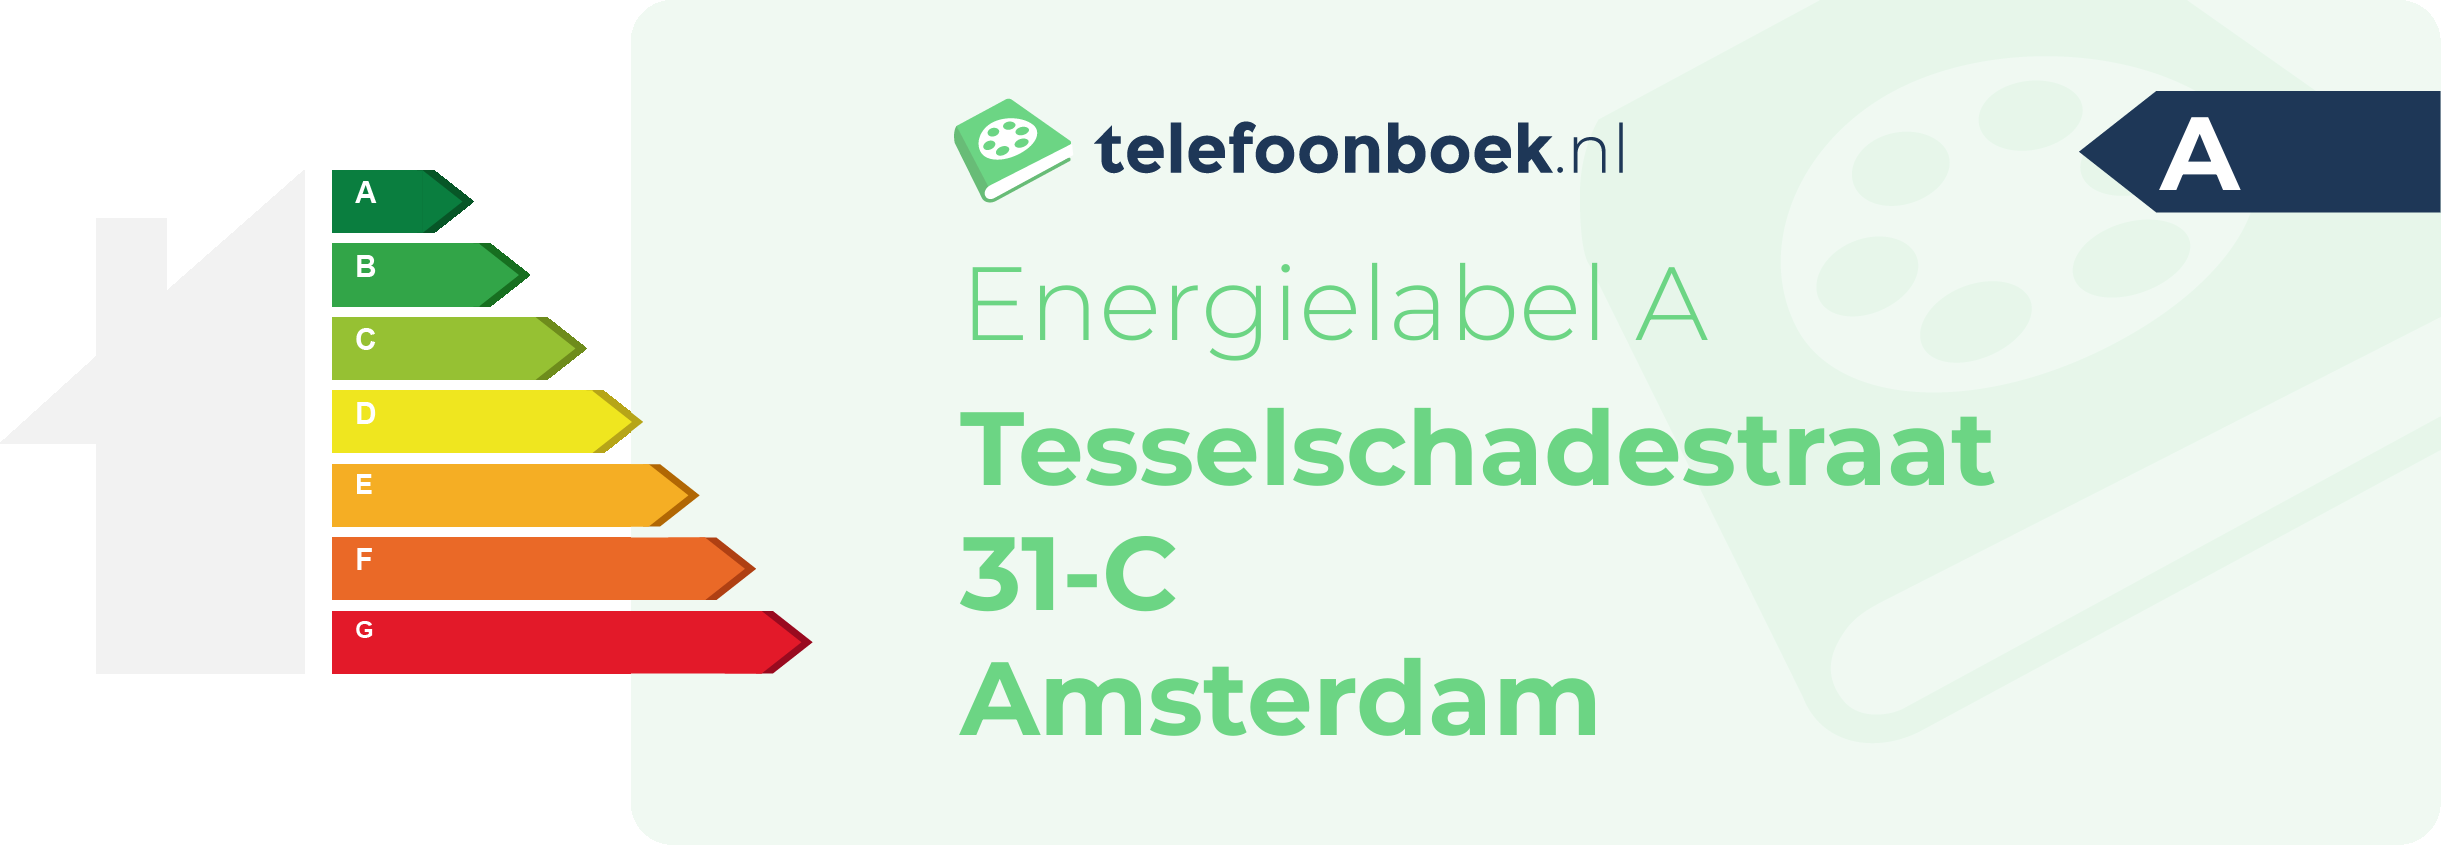 Energielabel Tesselschadestraat 31-C Amsterdam